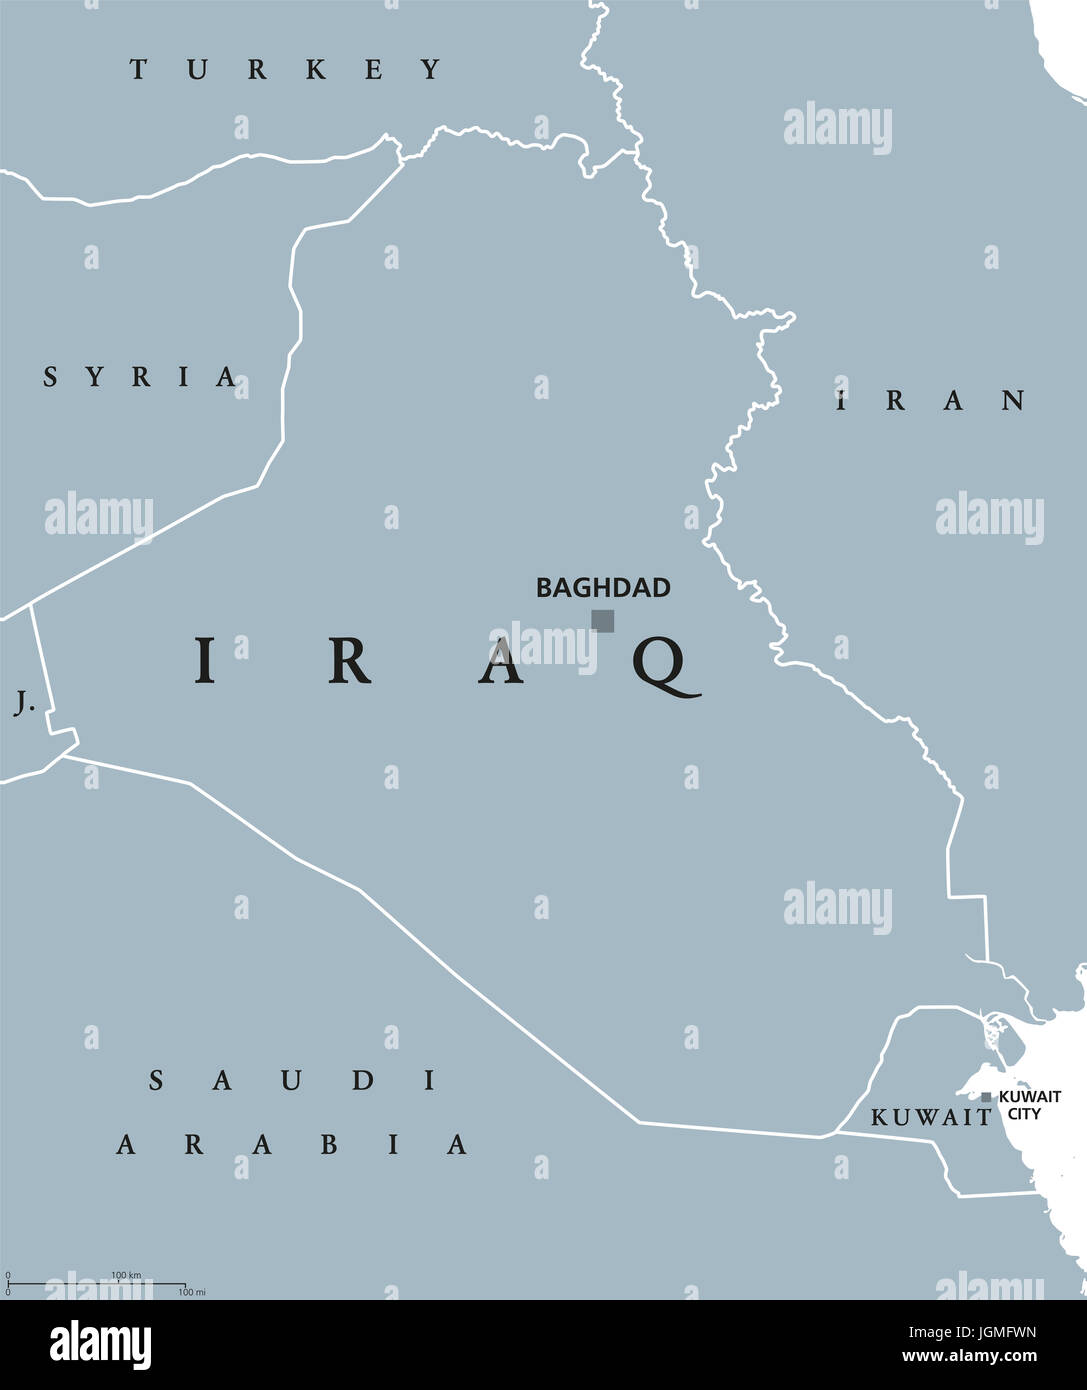 Iraq mappa politico con capitale Baghdad. Repubblica e paese arabo in Medio Oriente, Asia occidentale e sul Golfo Persico. Illustrazione di grigio. Foto Stock